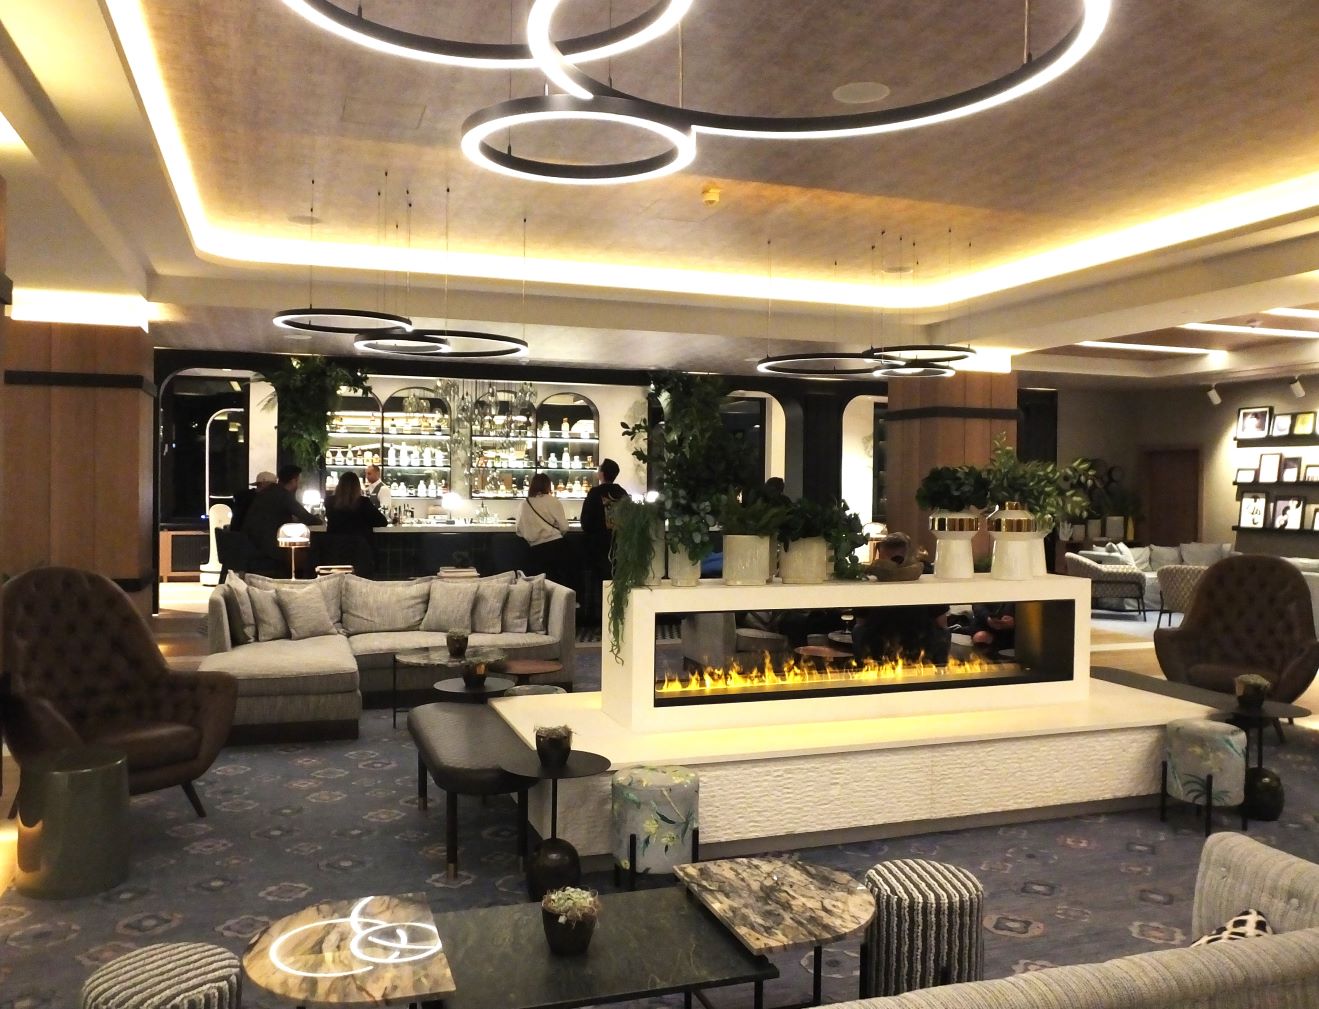 Die Lobby als freundliches Entree und „gute Stube“ des Hotels.
